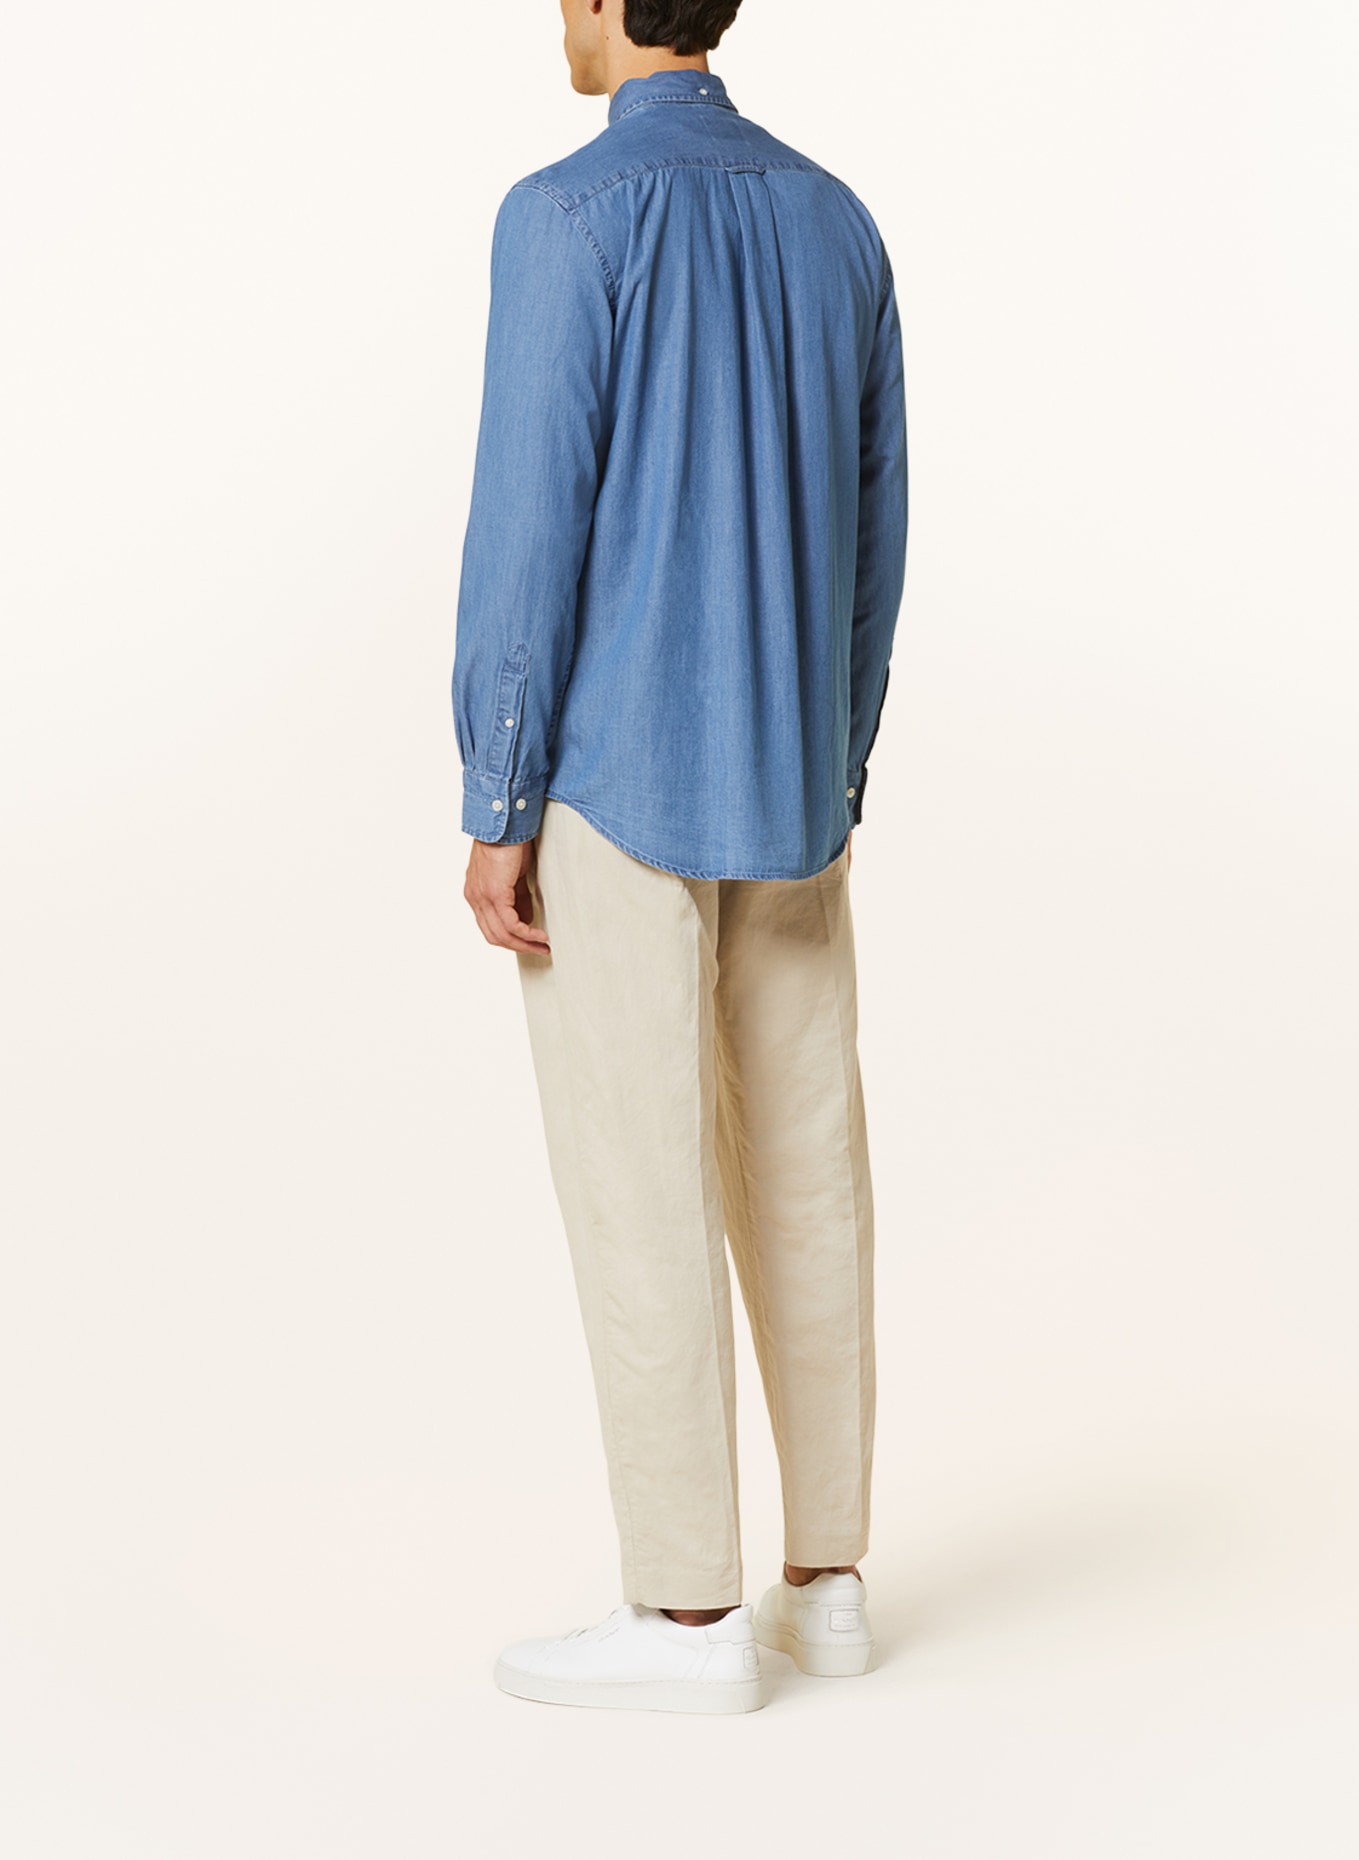 GANT Shirt regular fit in denim look, Color: BLUE (Image 3)